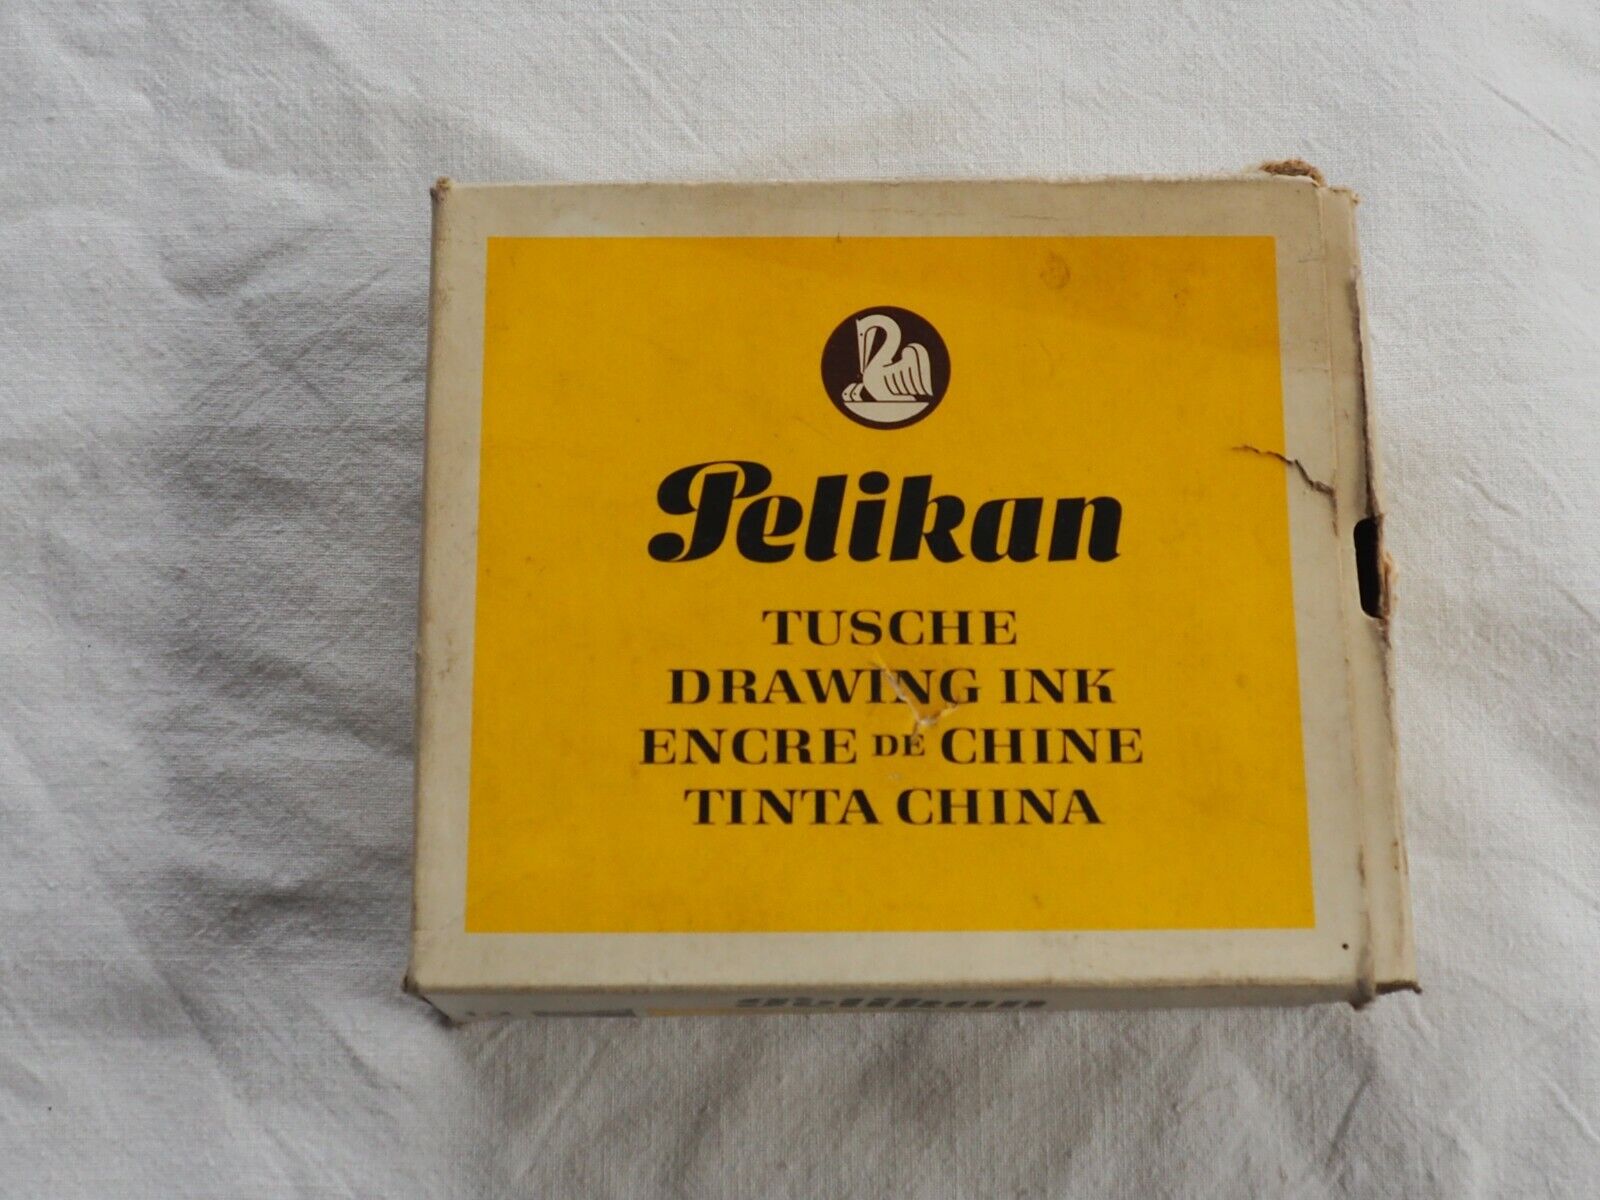 Vintage Drawing Ink Pelikan 12 -14 Gebrannte Siena Germany 